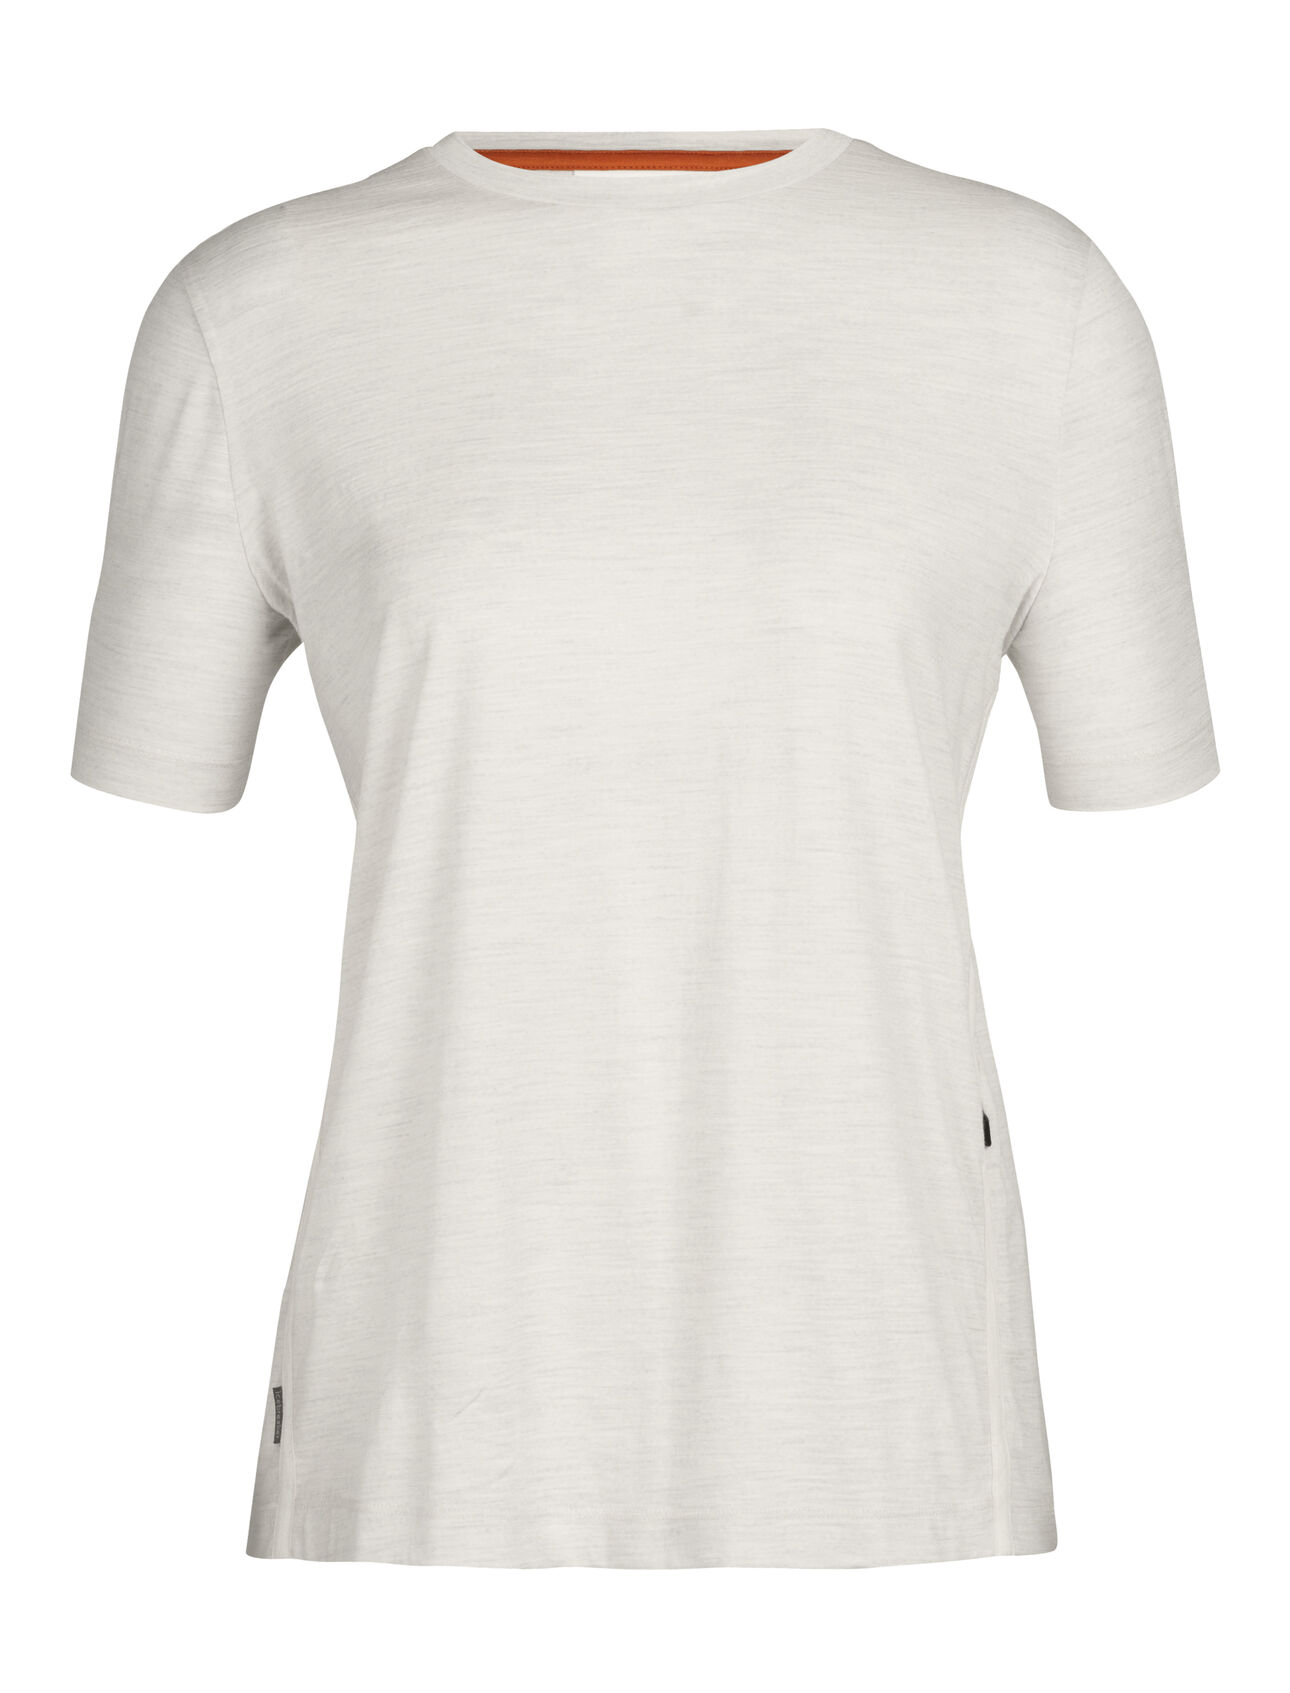 Dames T-shirt van merinowol Het Merino T-shirt is een ongelooflijk veelzijdige top, gemaakt van zachte, ademende jersey van 100% merinowol. Het T-shirt biedt een natuurlijk ademend comfort als je onderweg bent. 